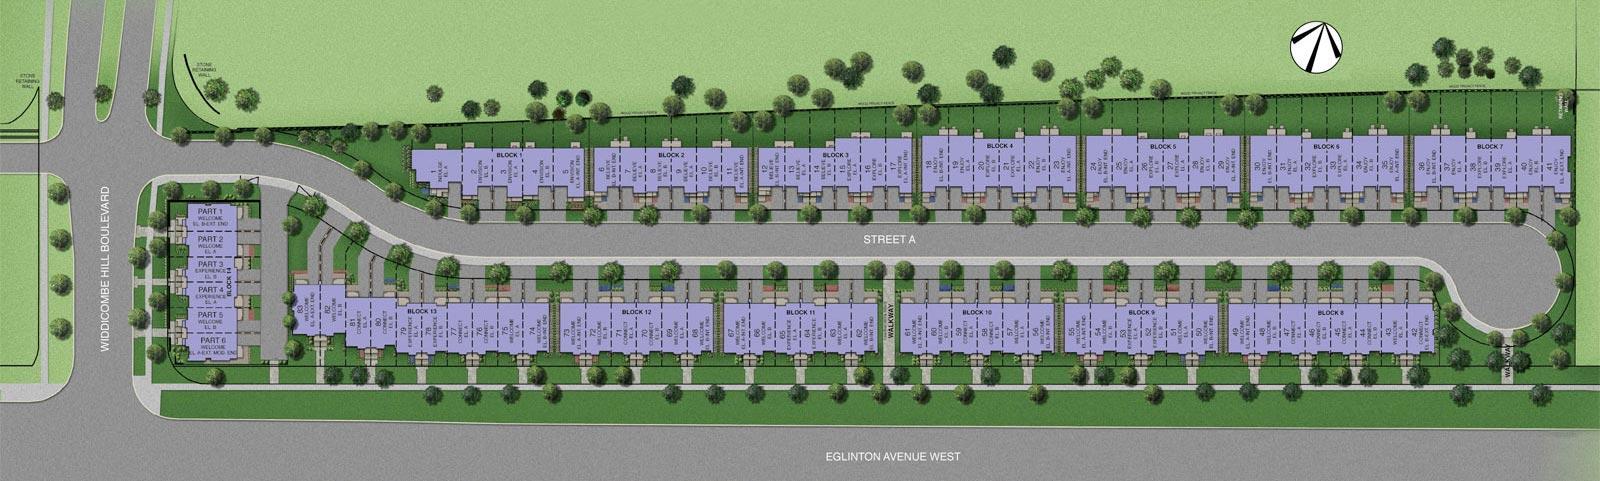 Widdicombe and Eglinton Site Plan